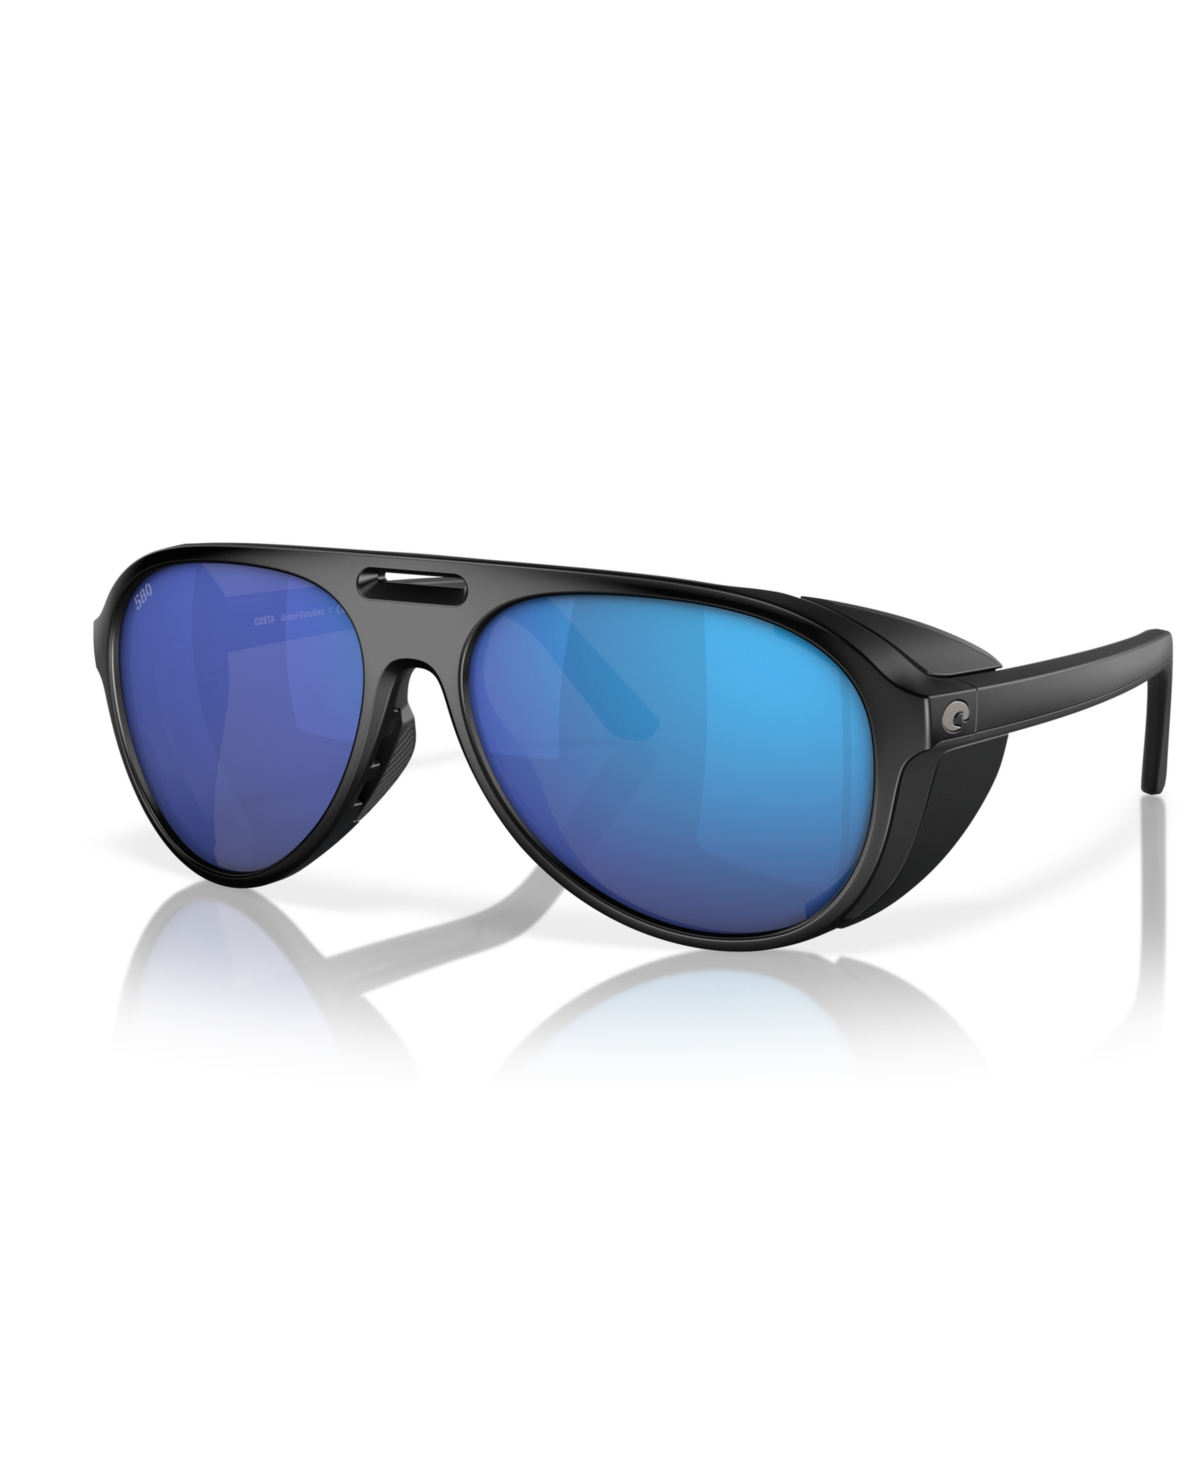 Costa Del Mar Men's Polarized Sunglasses, Grand Catalina 6s9117 In Matte Black,blue